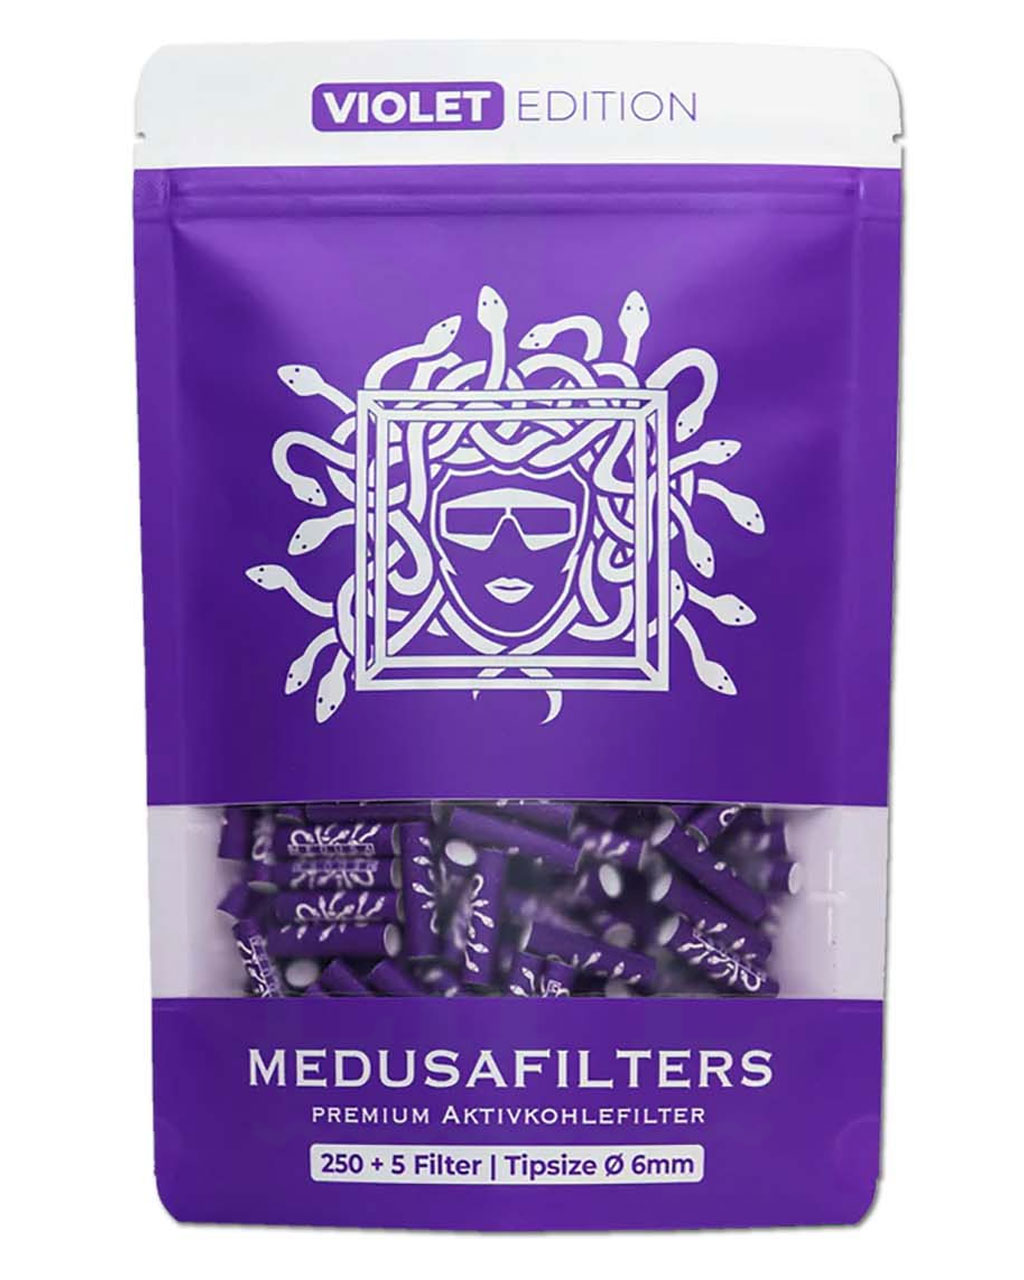 Filter & Aktivkohle MEDUSA FILTERS Aktivkohlefilter 6 mm ‘Violet Edition’ | 250 Filter